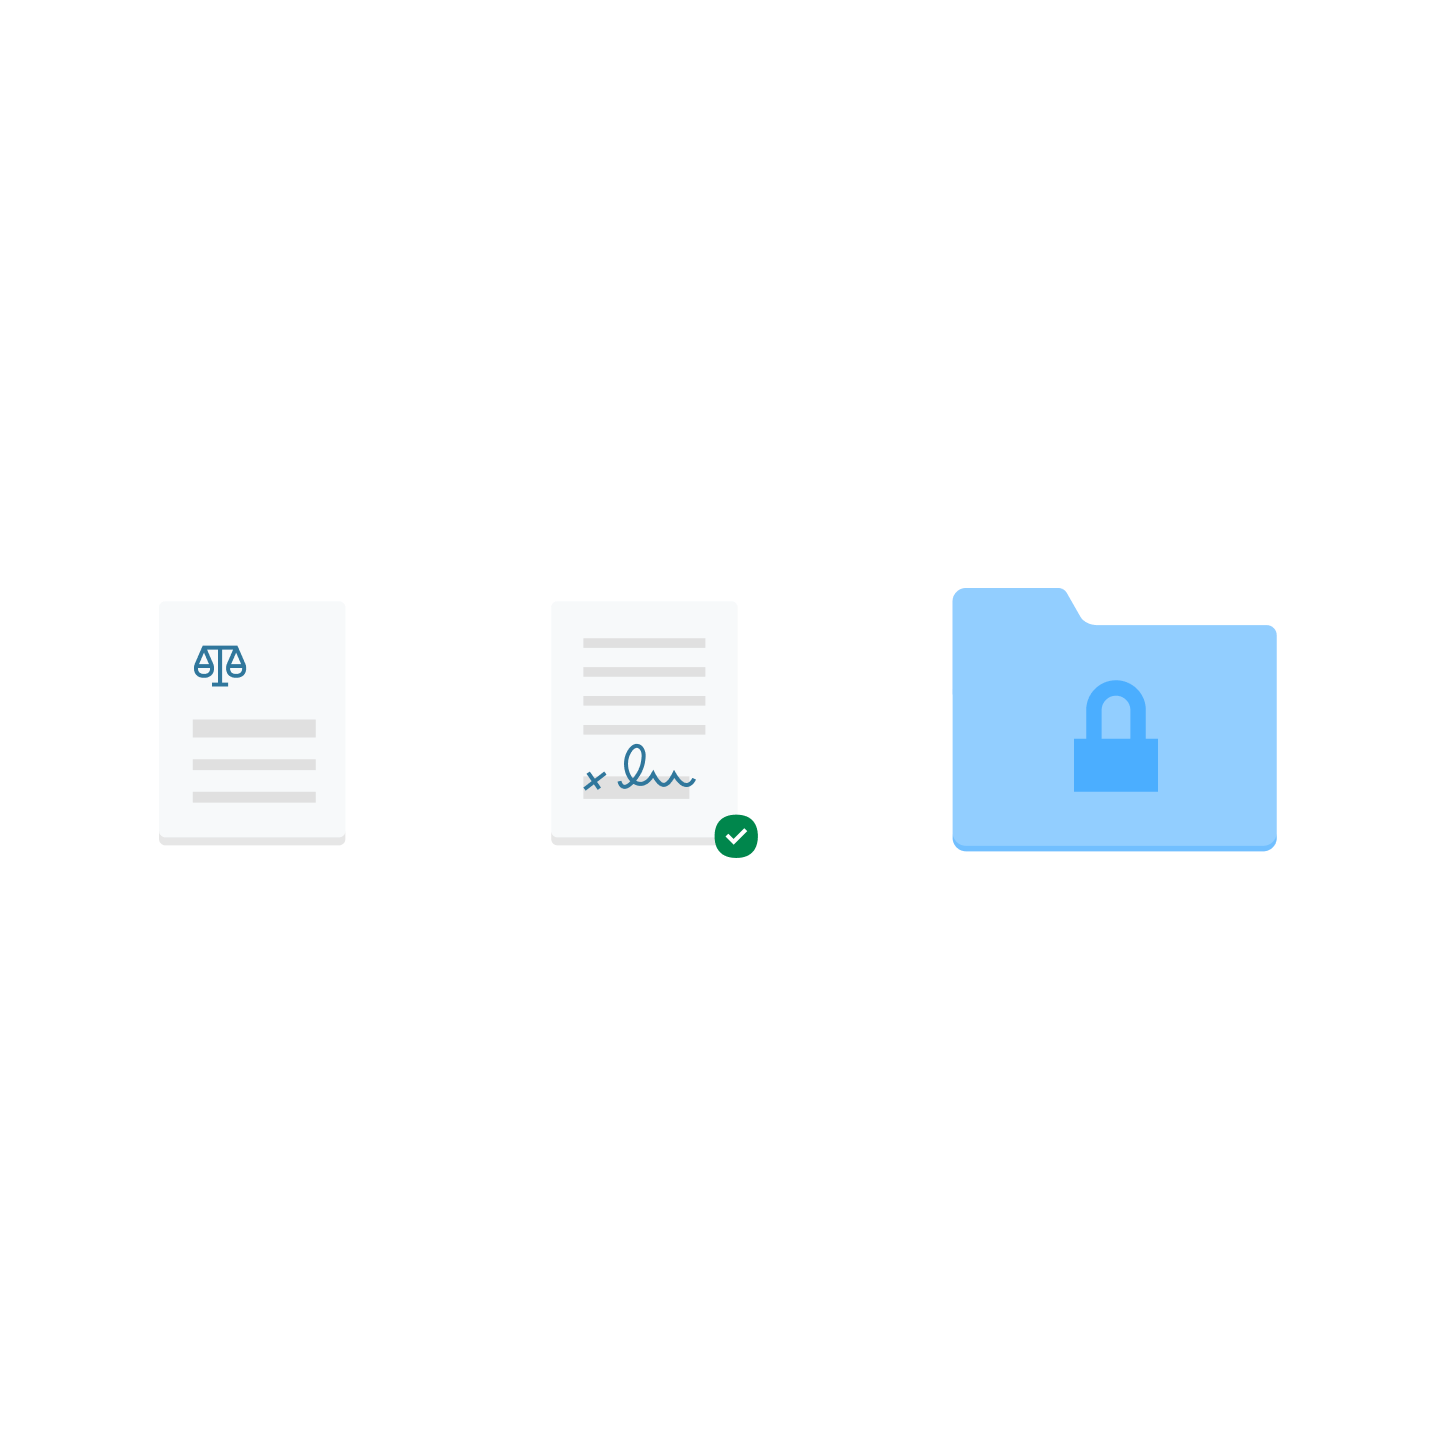 두 개의 문서 아이콘과 자물쇠가 달린 파란색 파일 폴더 아이콘